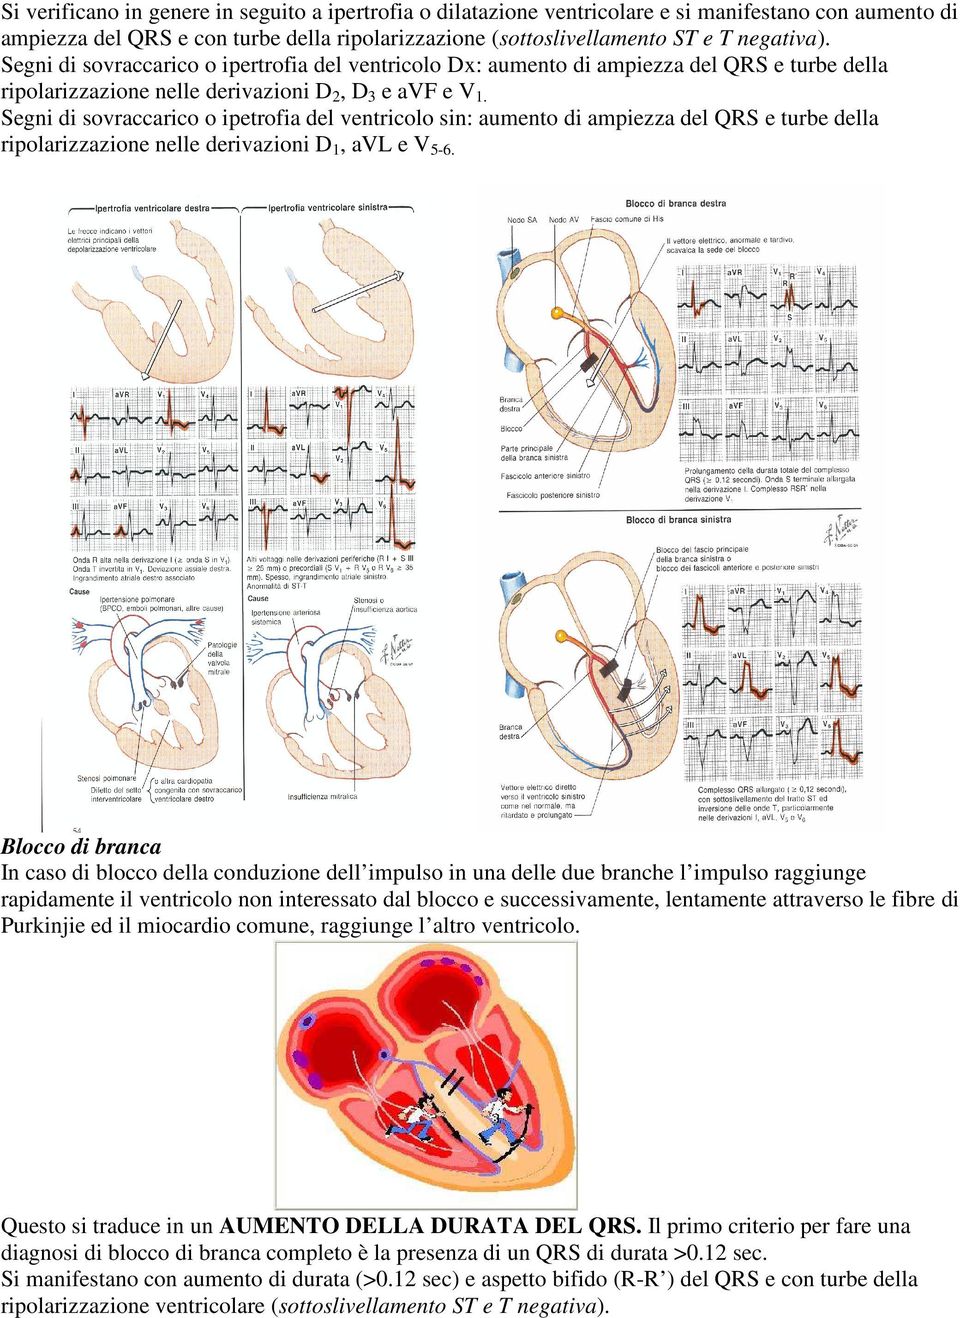 Segni di sovraccarico o ipetrofia del ventricolo sin: aumento di ampiezza del QRS e turbe della ripolarizzazione nelle derivazioni D 1, avl e V 5-6.